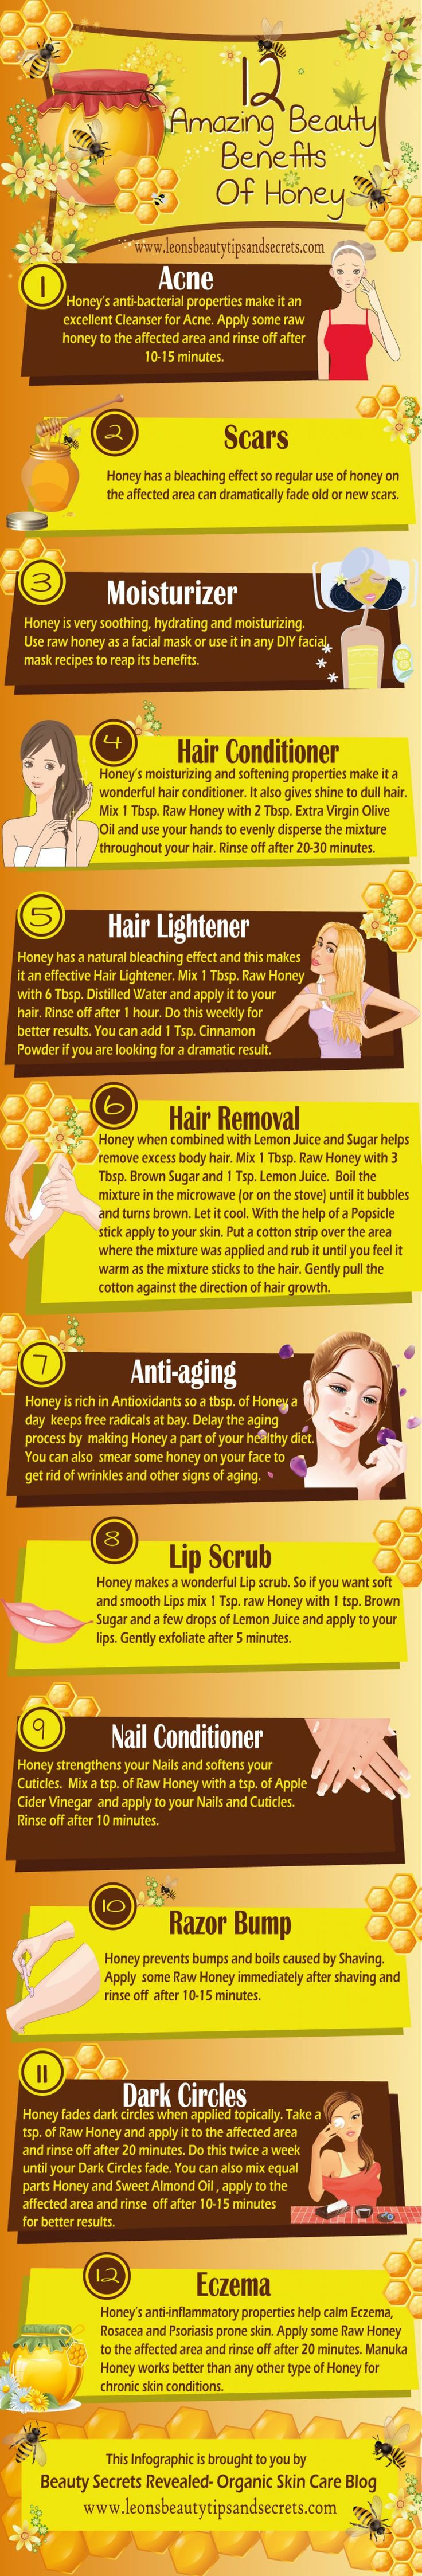 Amazing Benefits of Honey [Infographic]